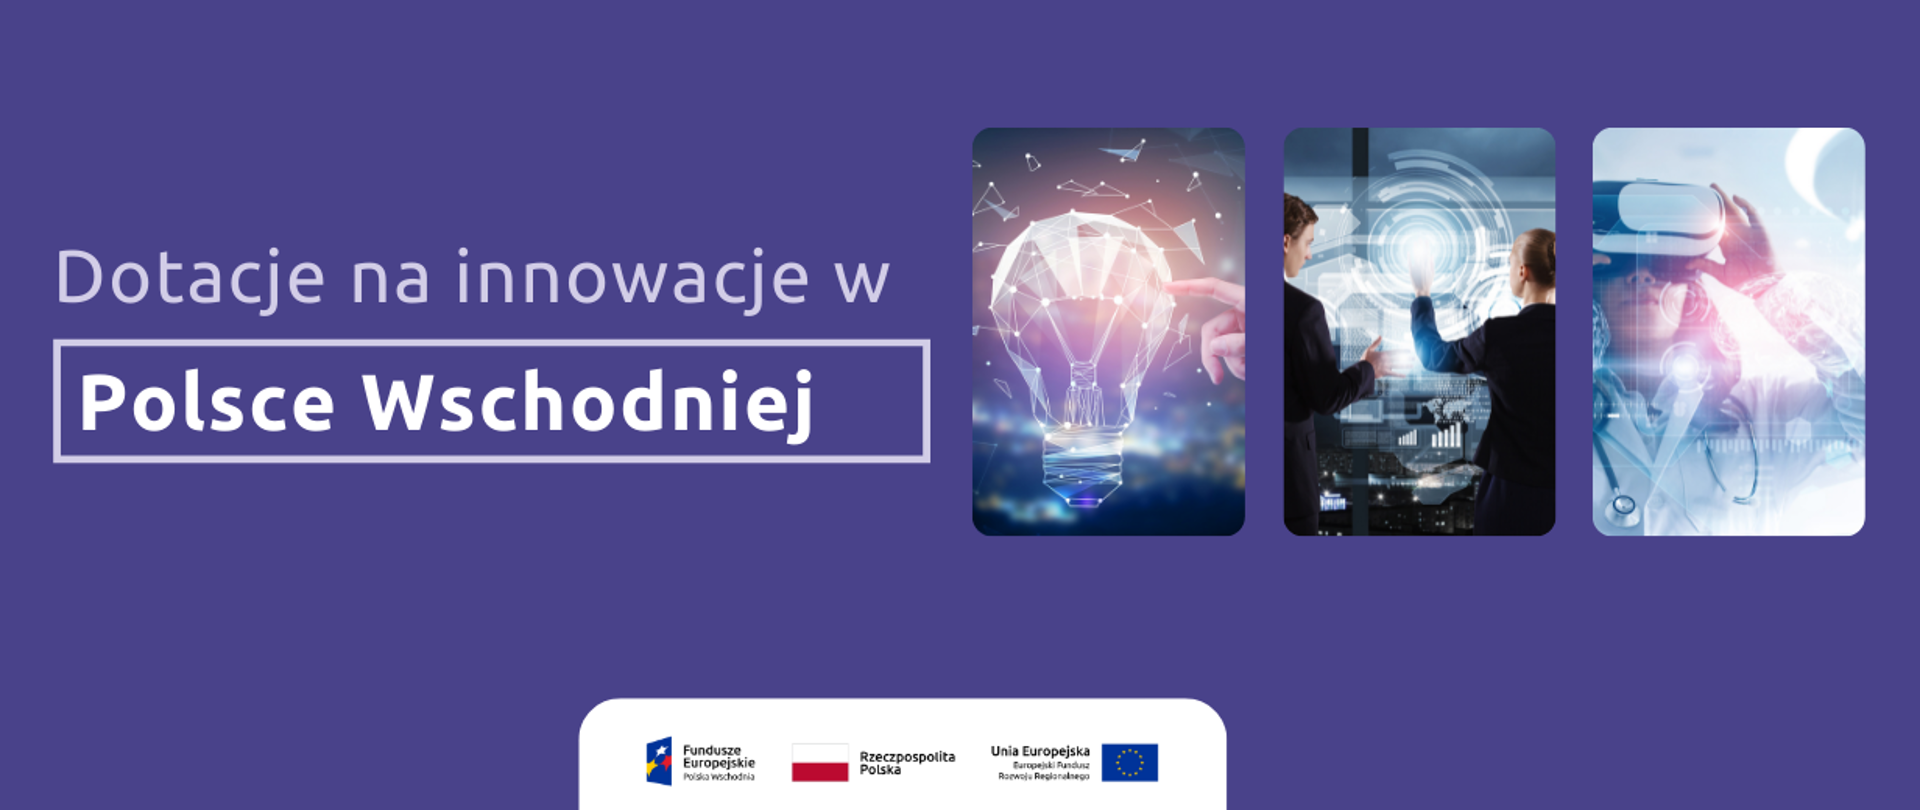 Na grafice napis - Dotacje na innowacje w Polsce Wschodniej oraz ilustracje o tematyce innowacyjnej. Na dole logotypy.